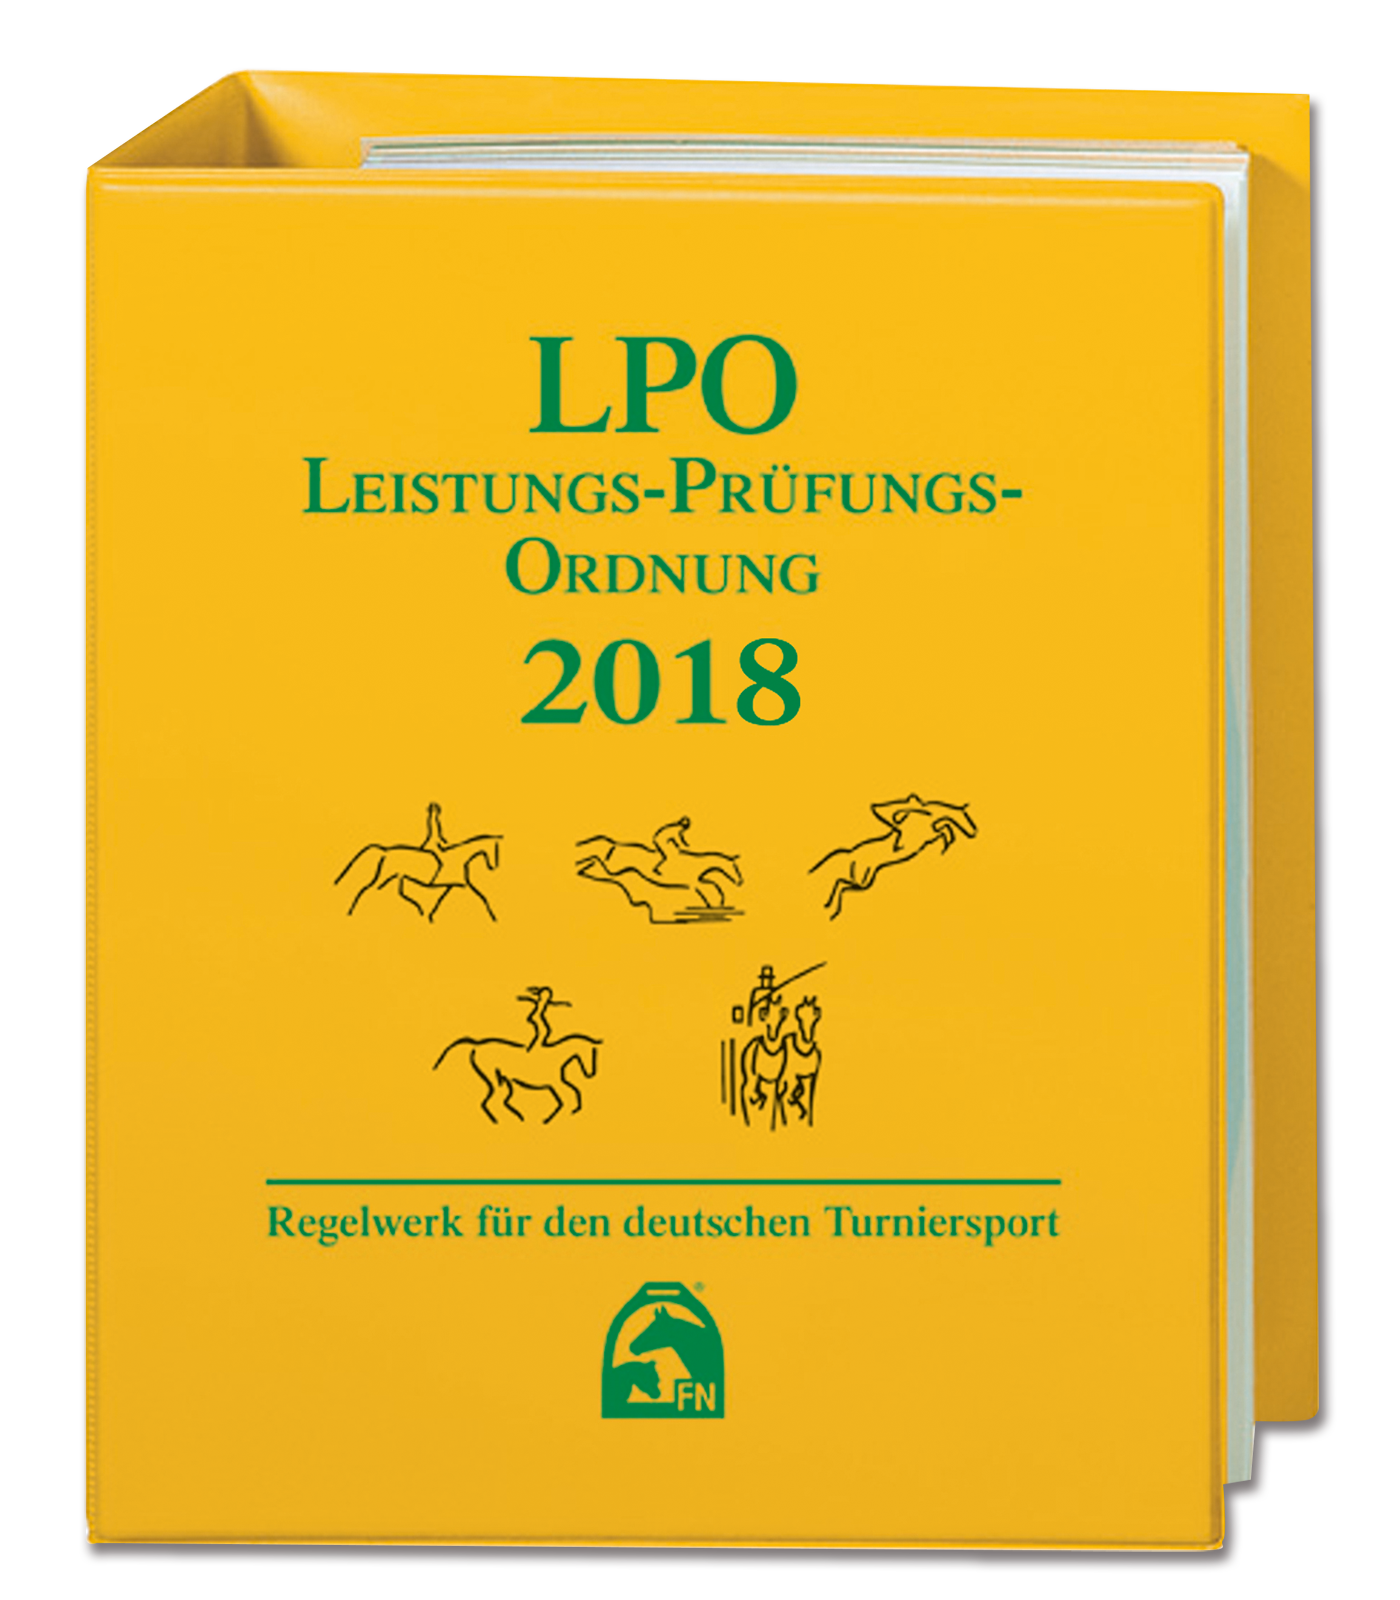 LPO - Leistungs-Prüfungs-Ordnung